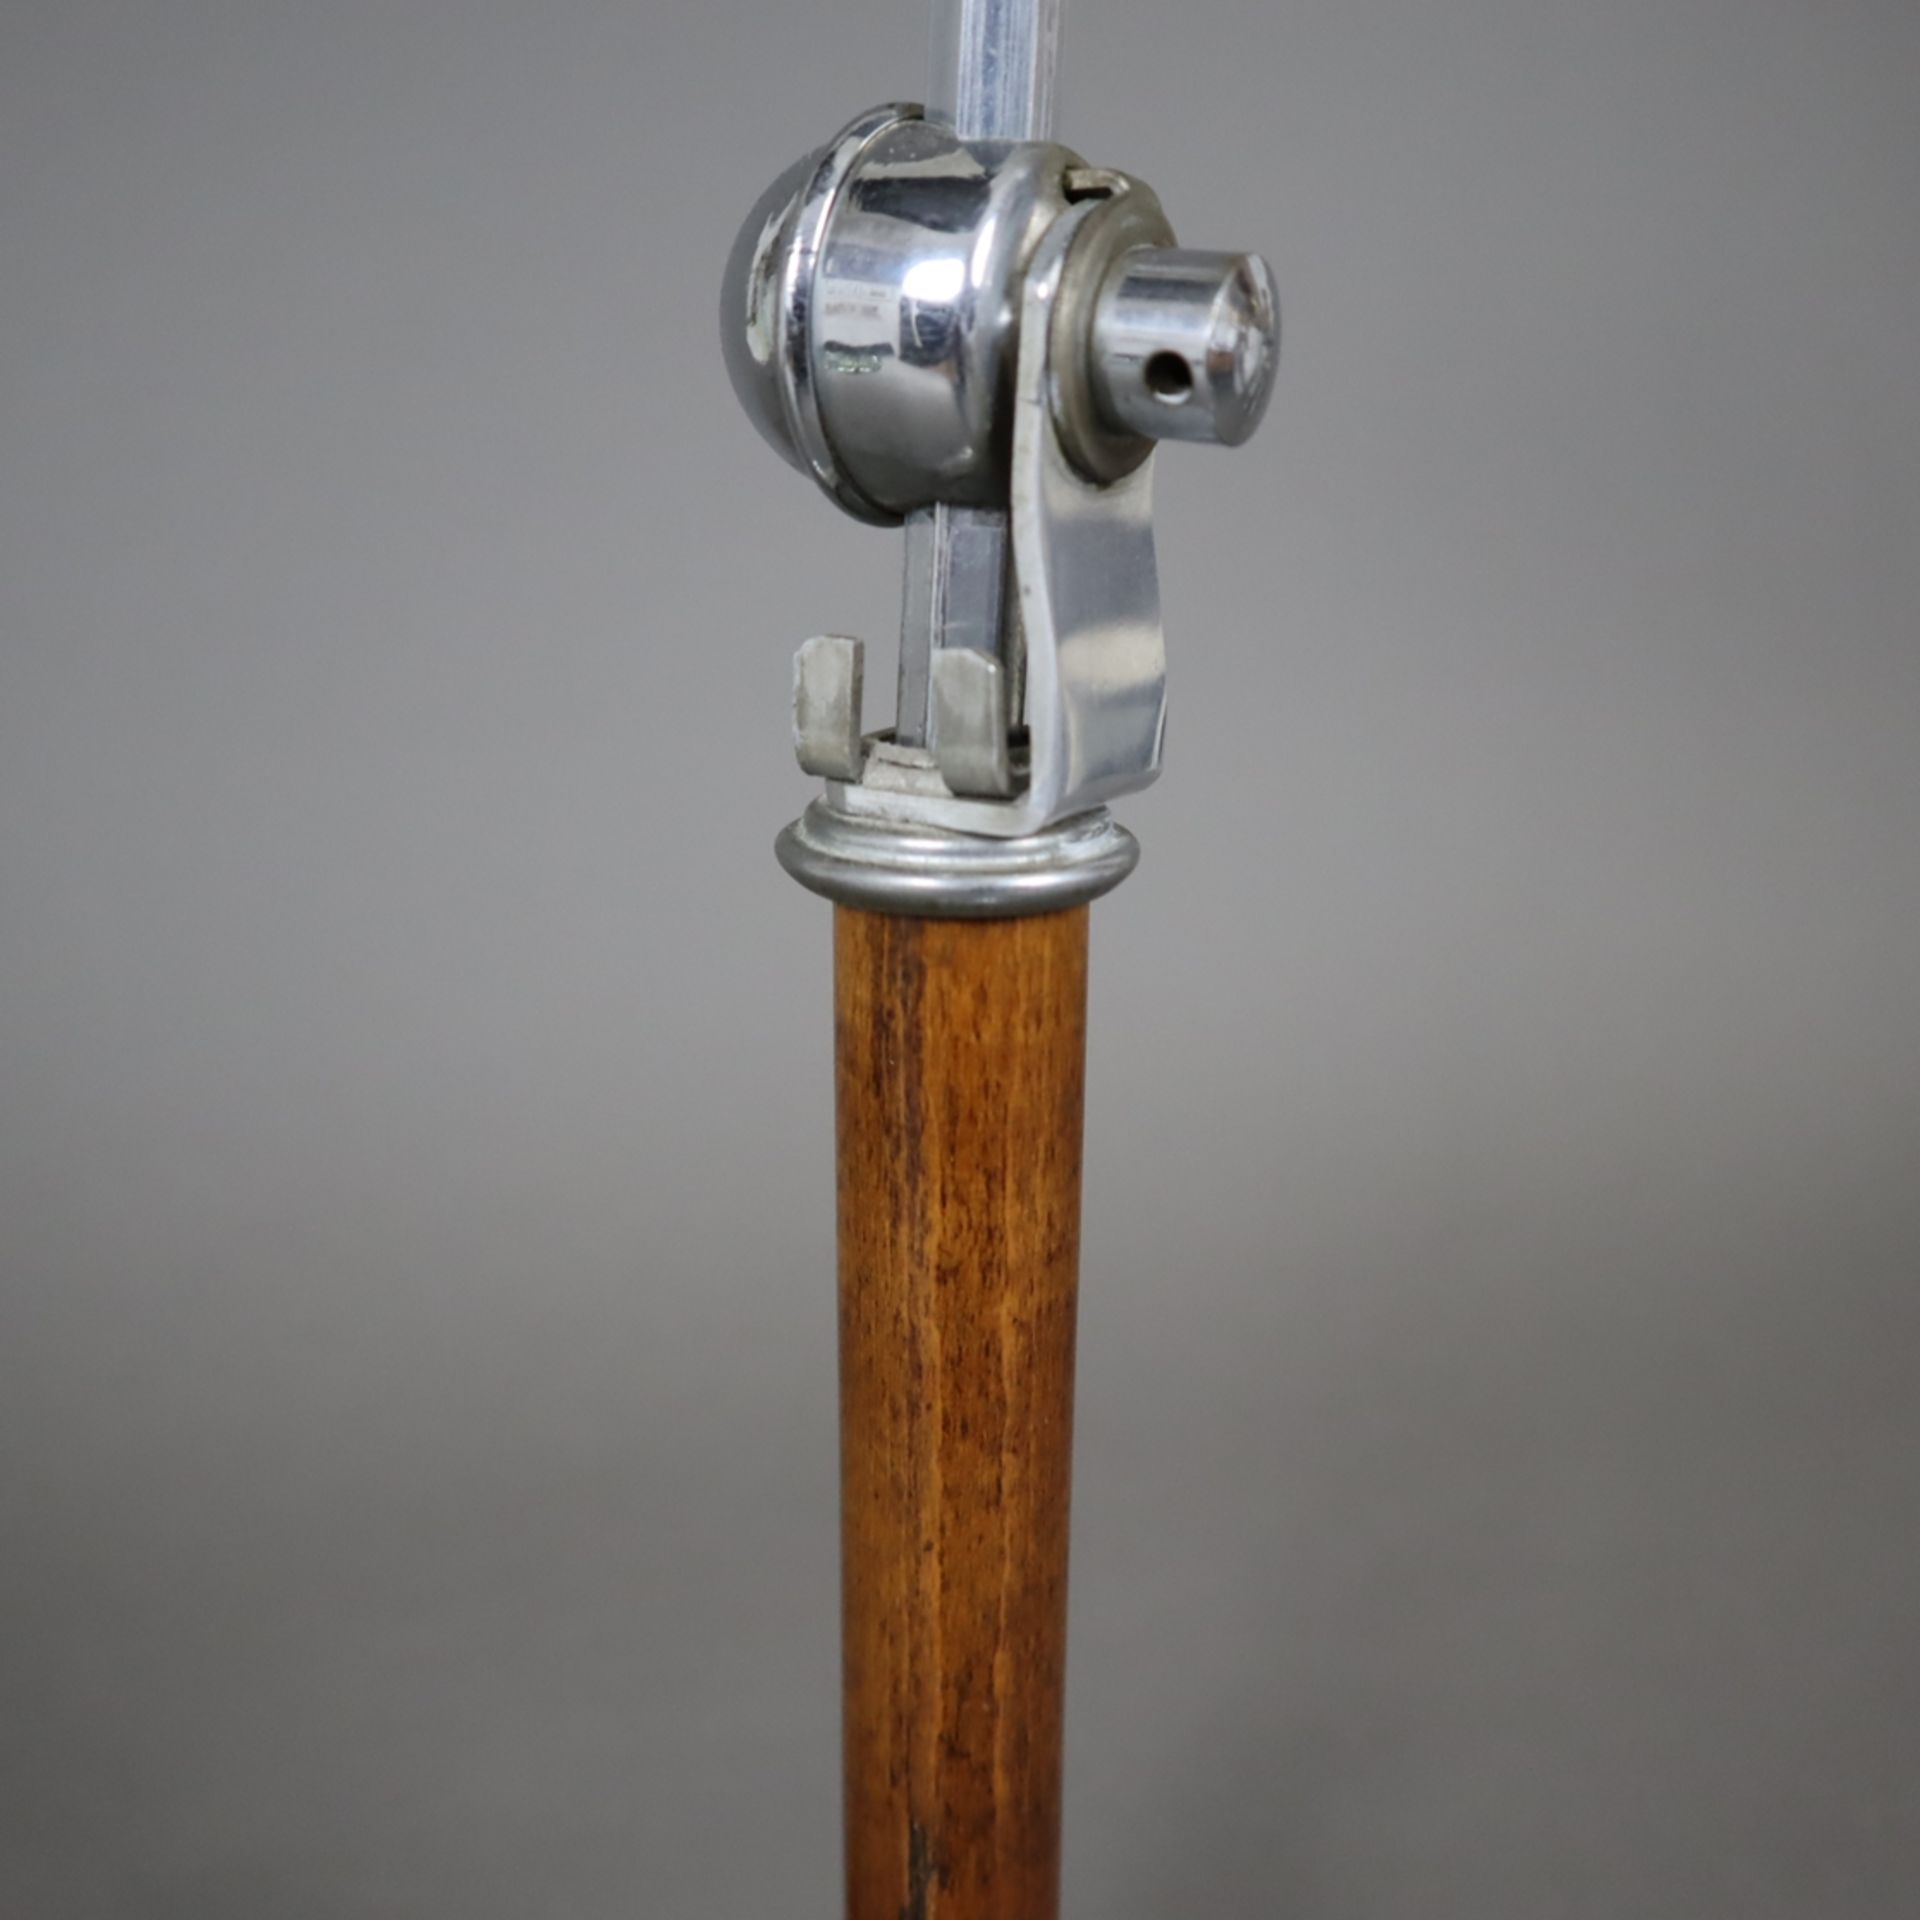 Art-Déco Tischlampe - 1.Hälfte 20.Jh., verchromtes Messing/Holz/Glas, trichterförmiger Standfuß, zy - Bild 3 aus 9